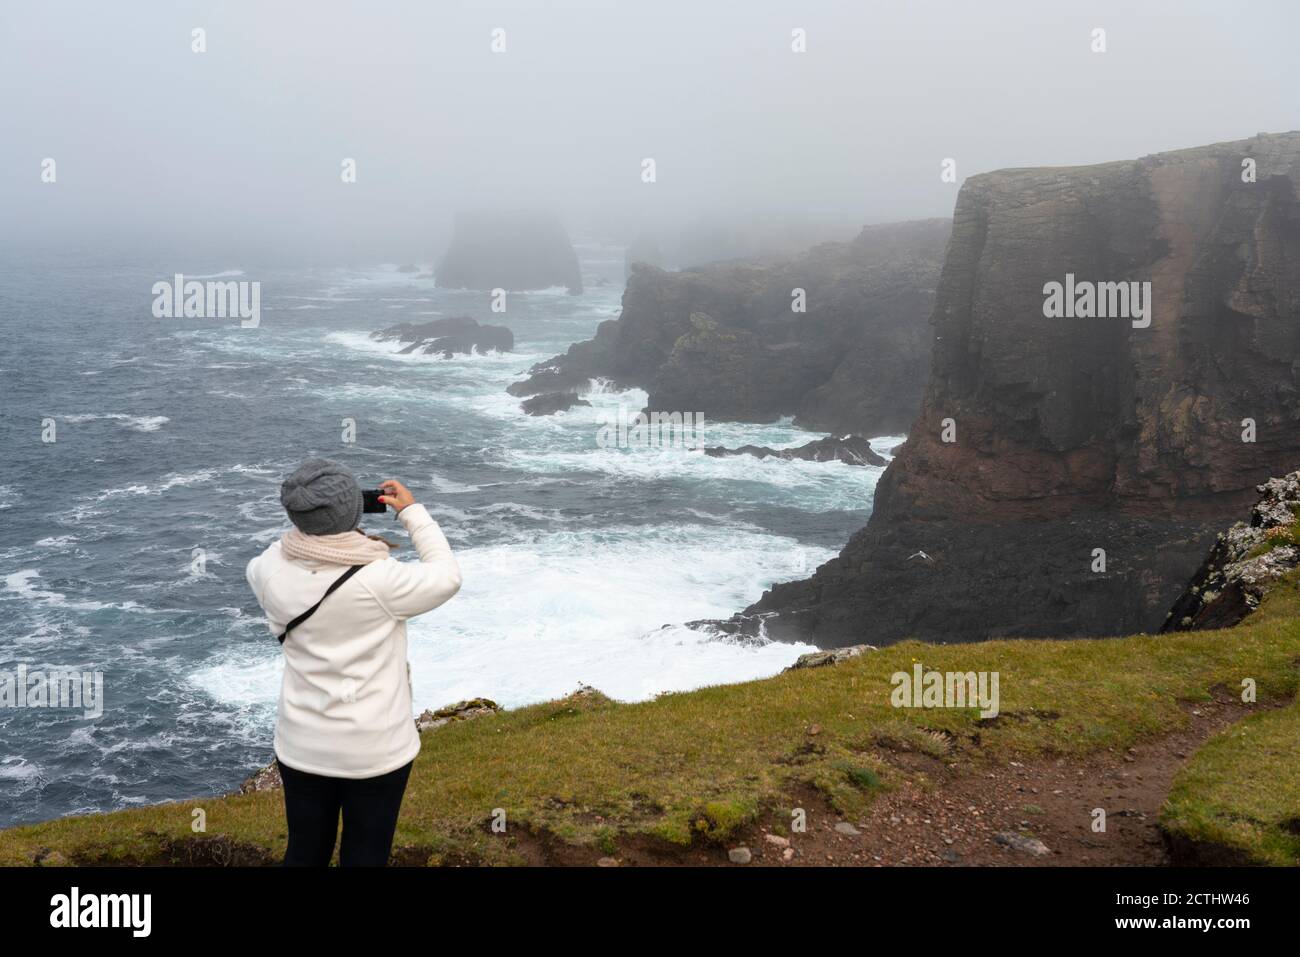 Spettacolari scogliere sulla costa di Eshaness a Northmavine , terraferma settentrionale delle isole Shetland, Scozia, Regno Unito Foto Stock